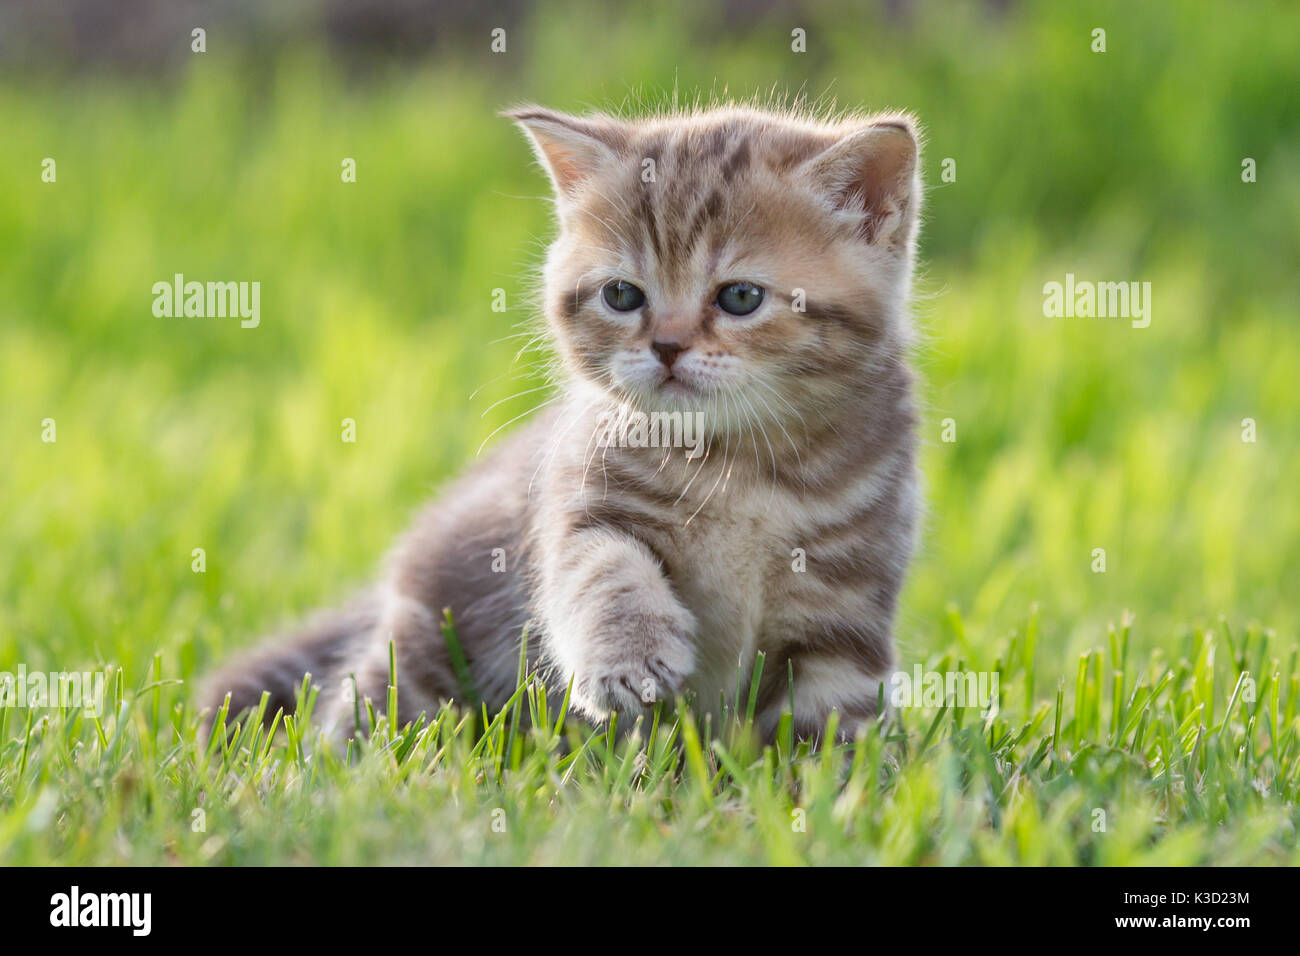 Bambino gatto o gattino in erba verde Foto Stock